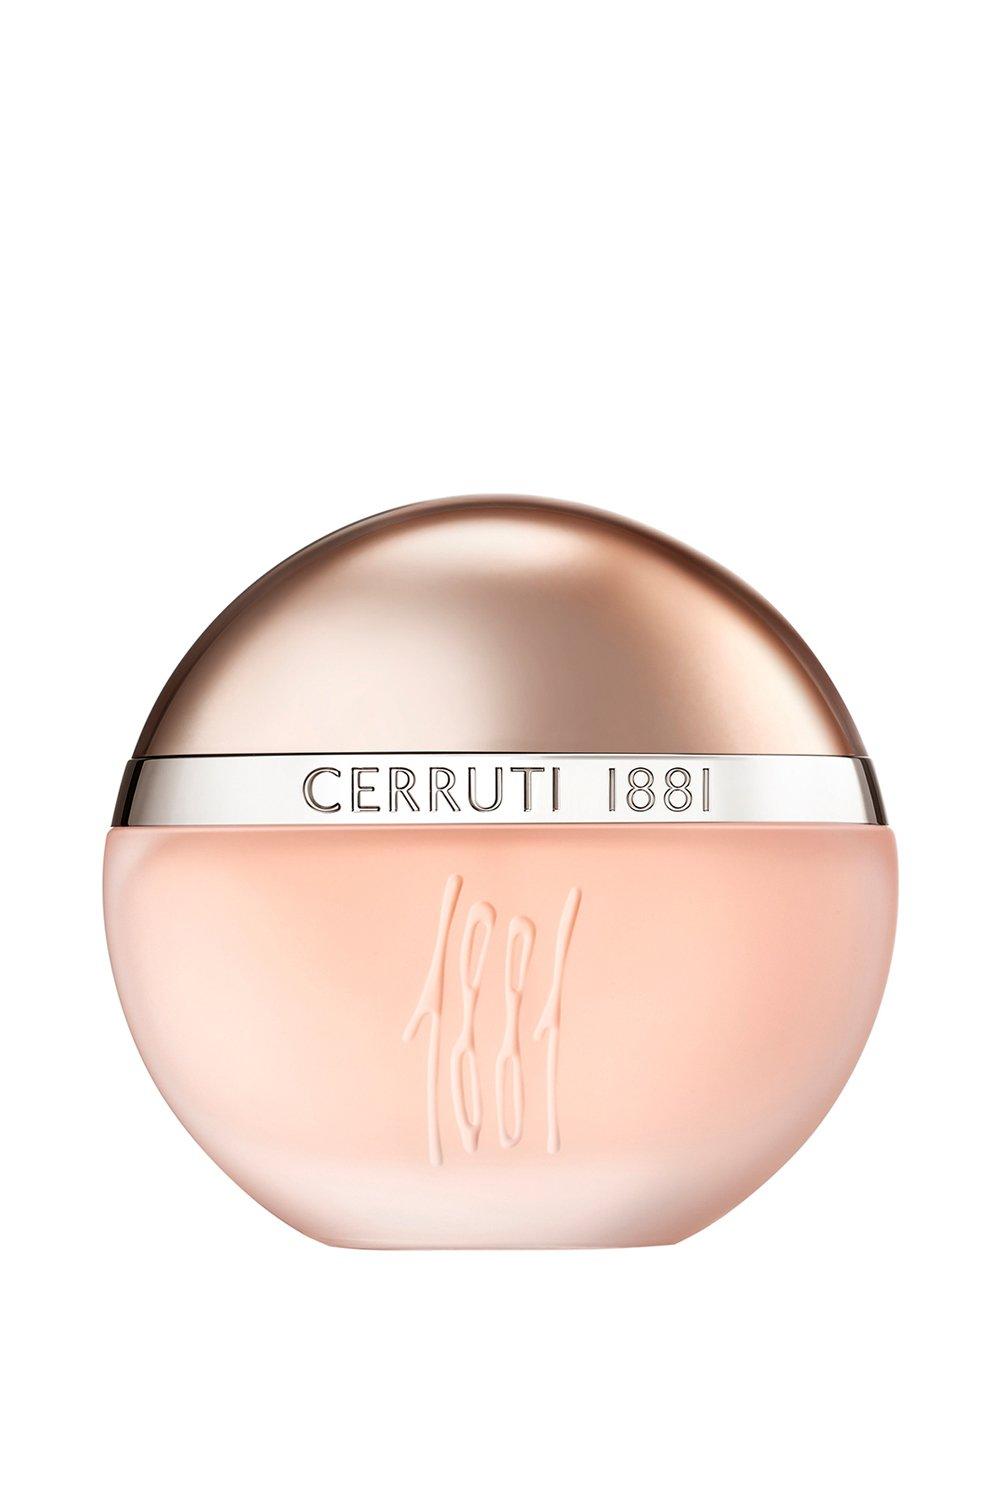 Fragrance | Cerruti 1881 Femme F Eau De Toilette 100ml | Cerruti